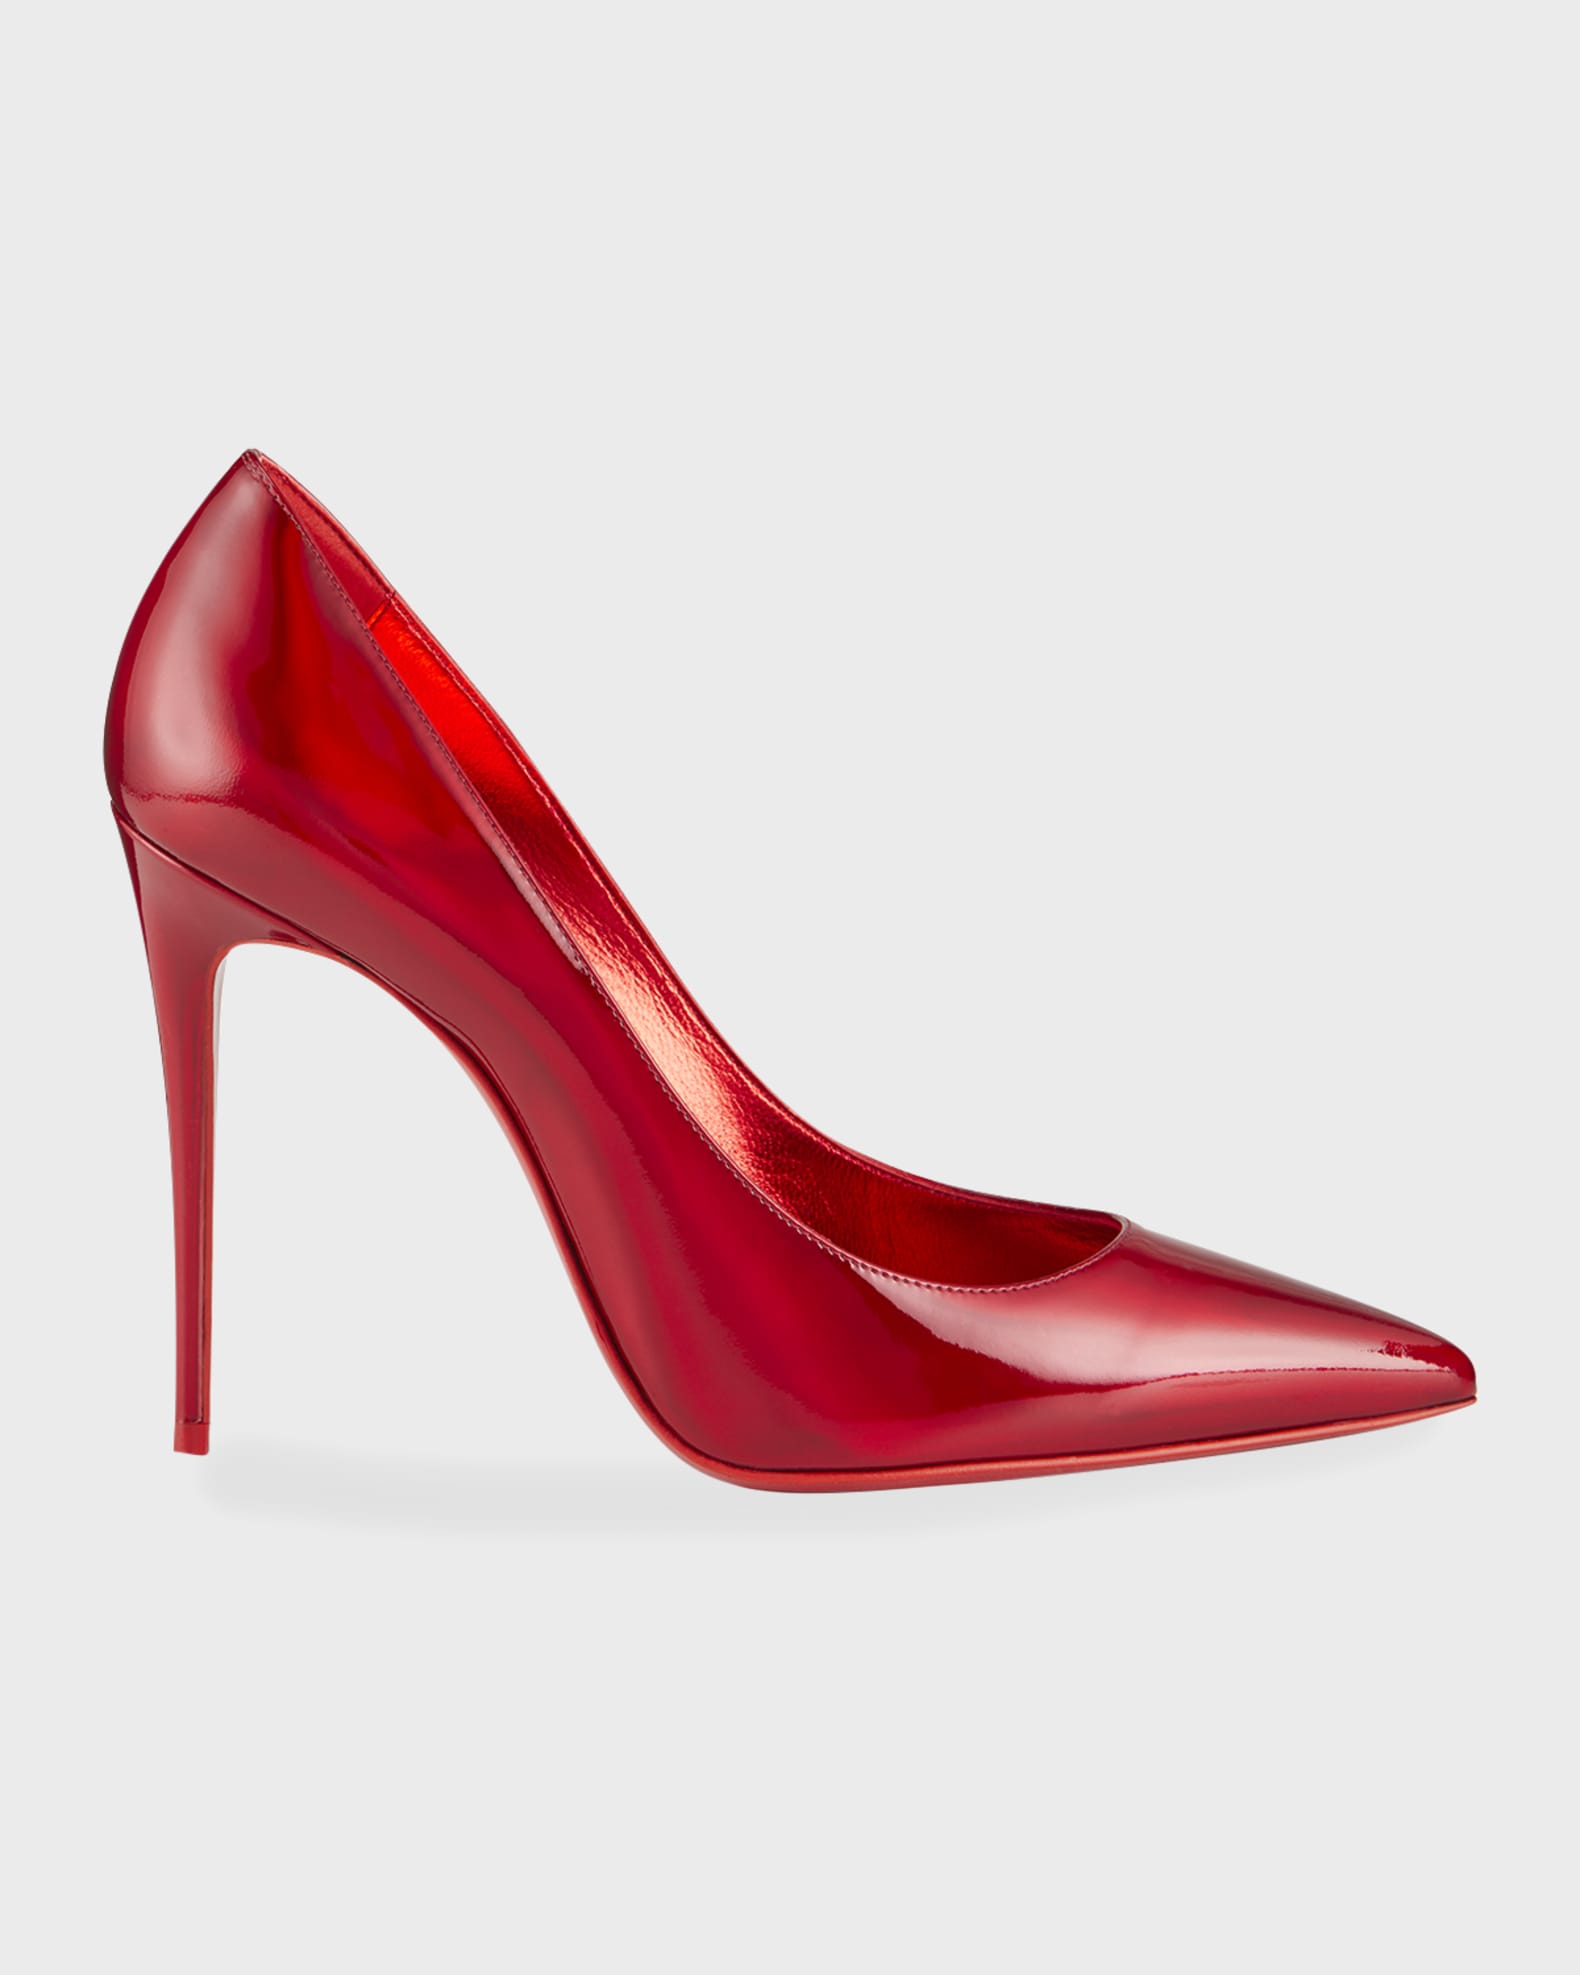 Shoes, Christian Louis Vuitton Red Pumps